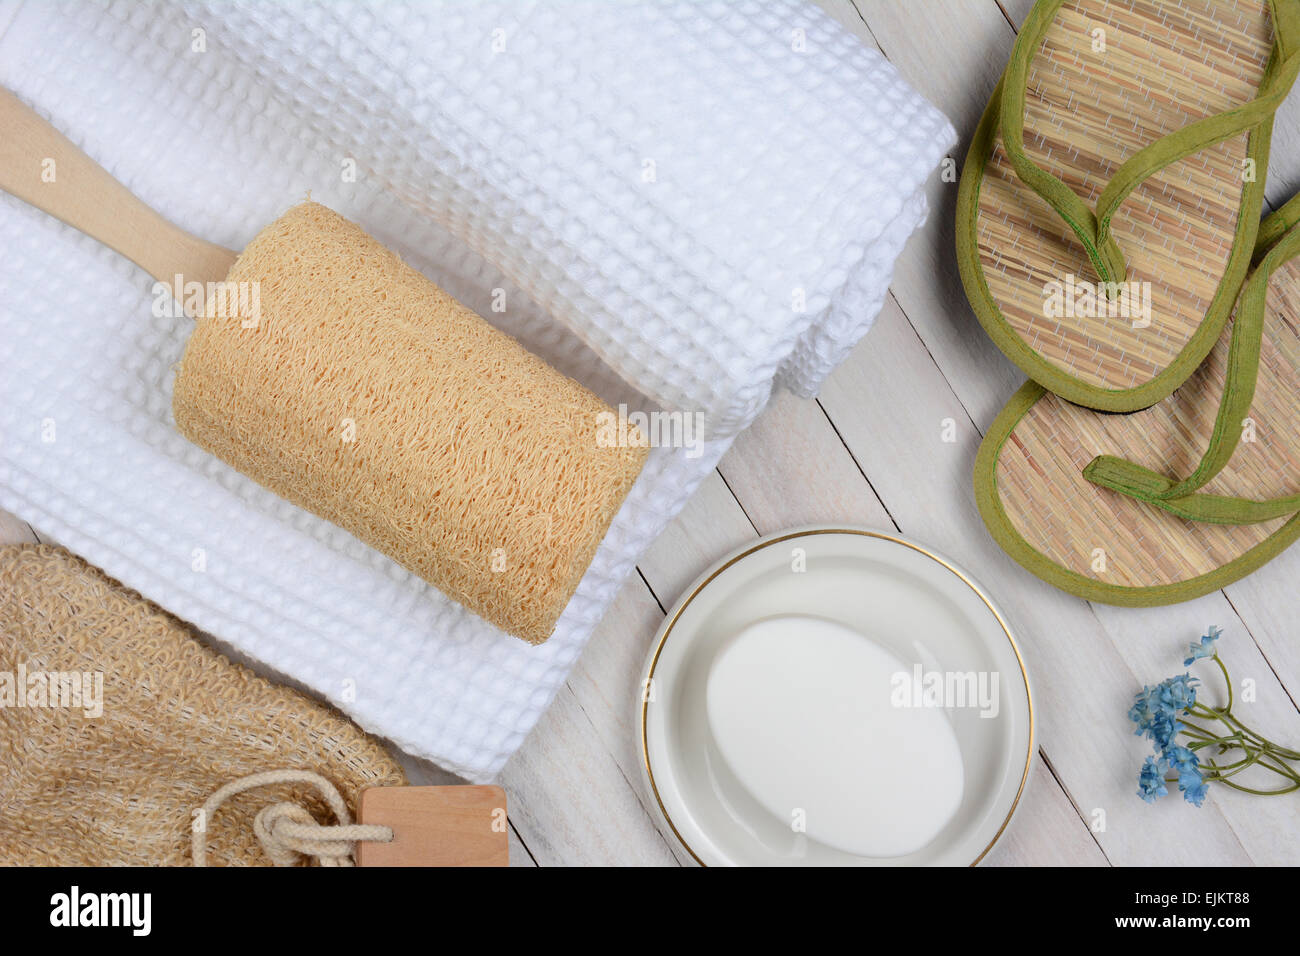 Spa e il bagno ancora in vita. Alta angolazione degli accessori per il bagno tra cui, asciugamani, sapone, loofah e sandali, su un rustico bianco Foto Stock